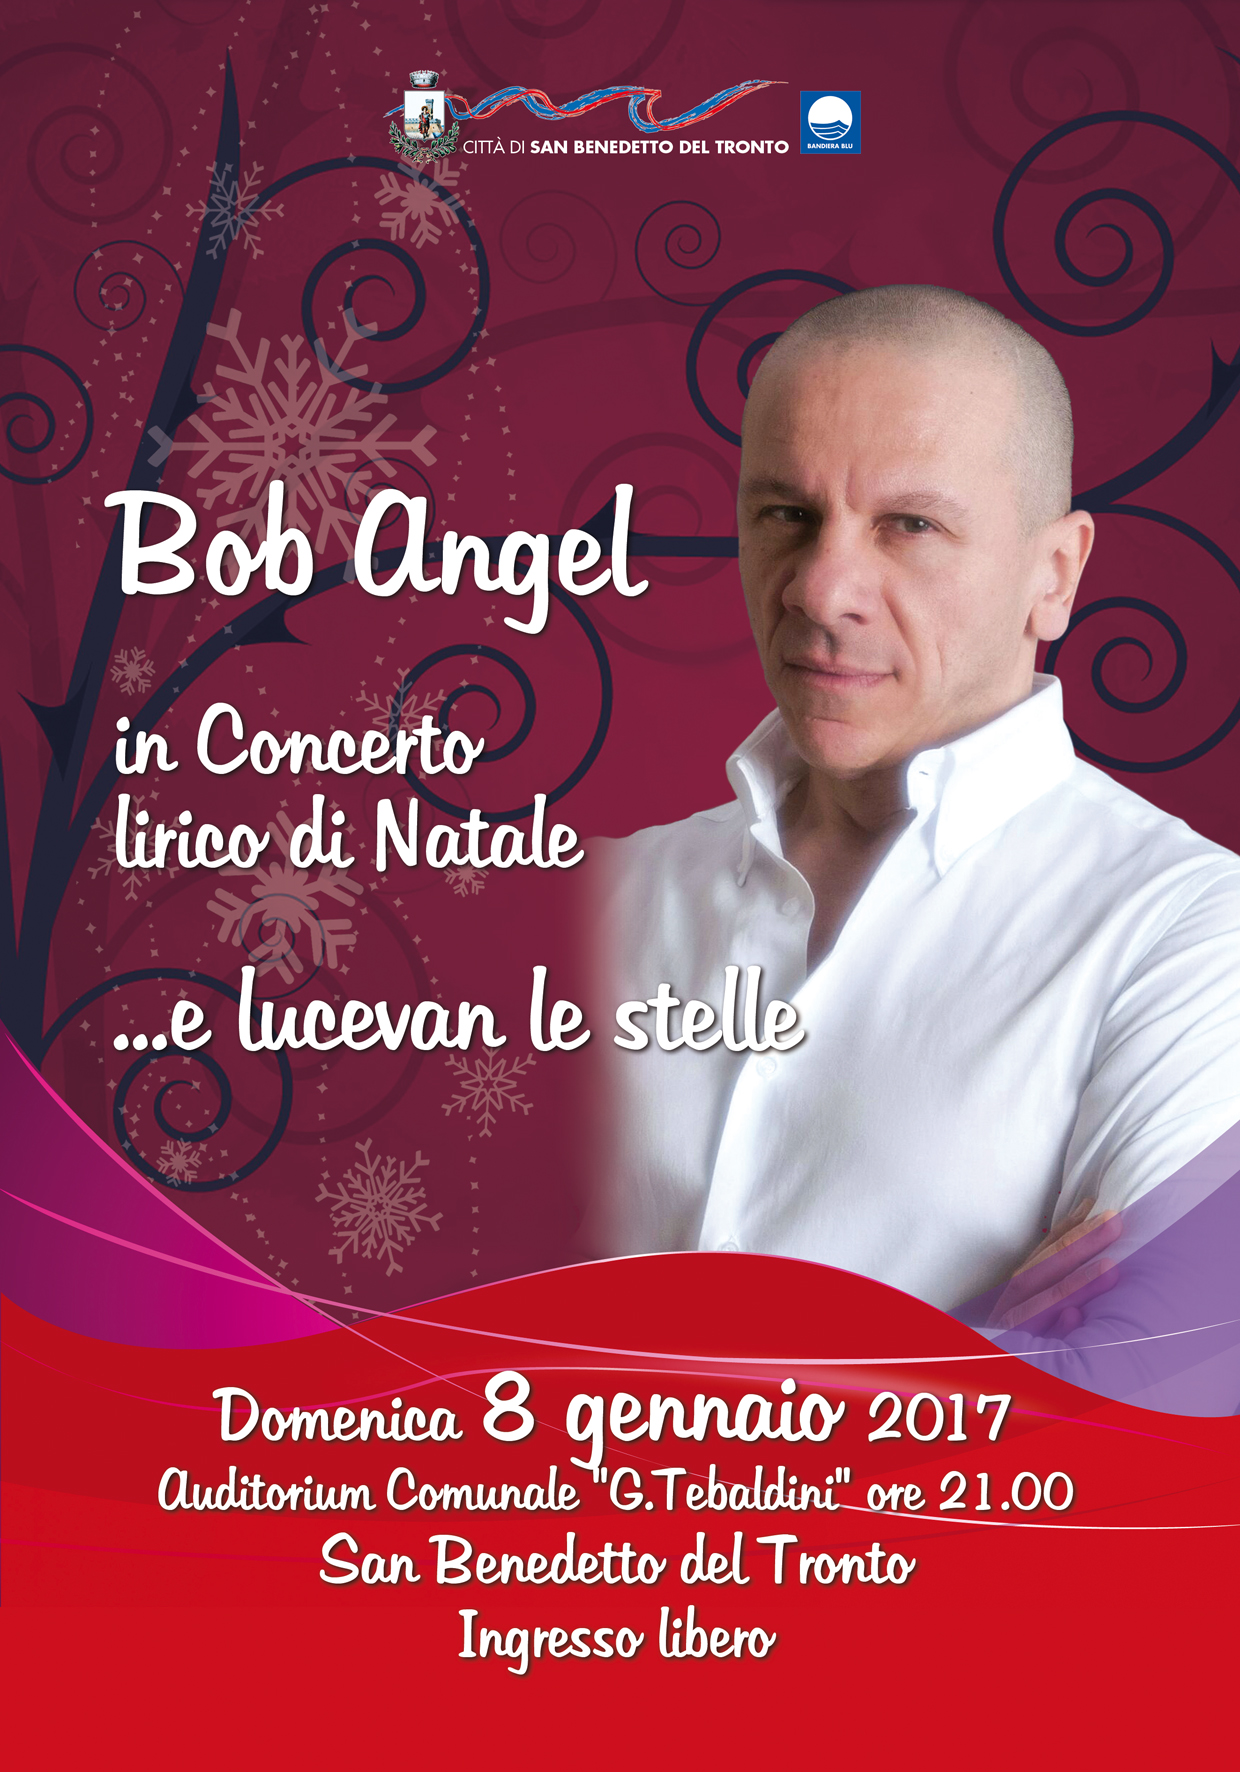 Bob Angel in concerto di Natale